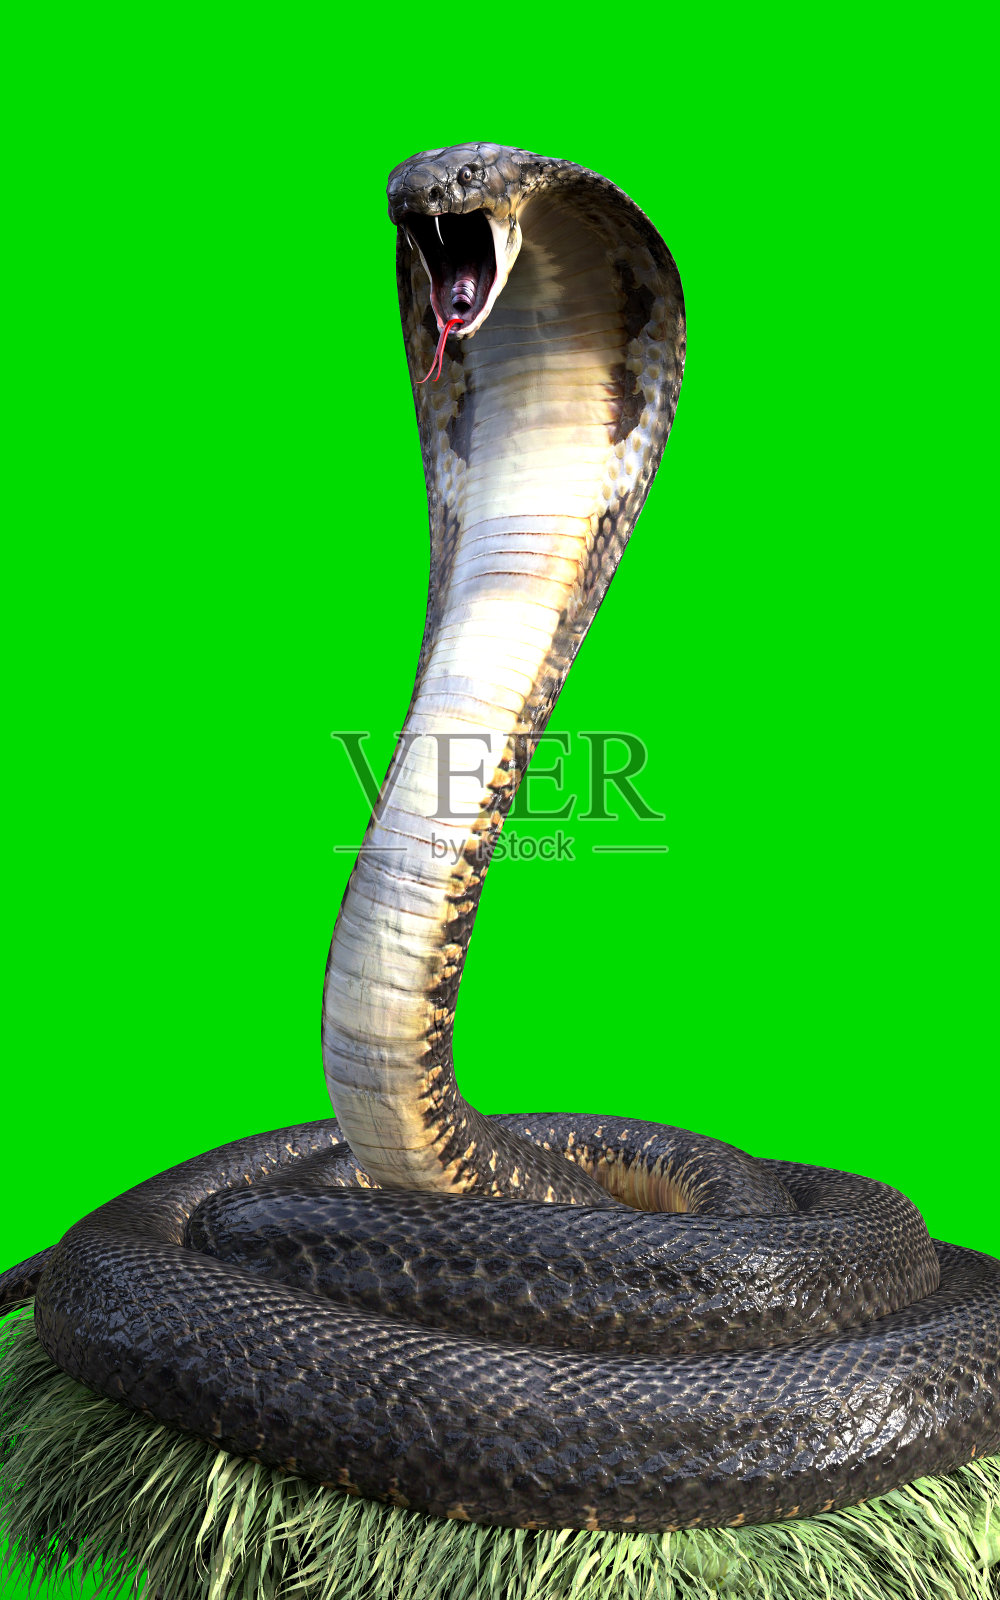 眼镜蛇王是世界上最长的毒蛇照片摄影图片